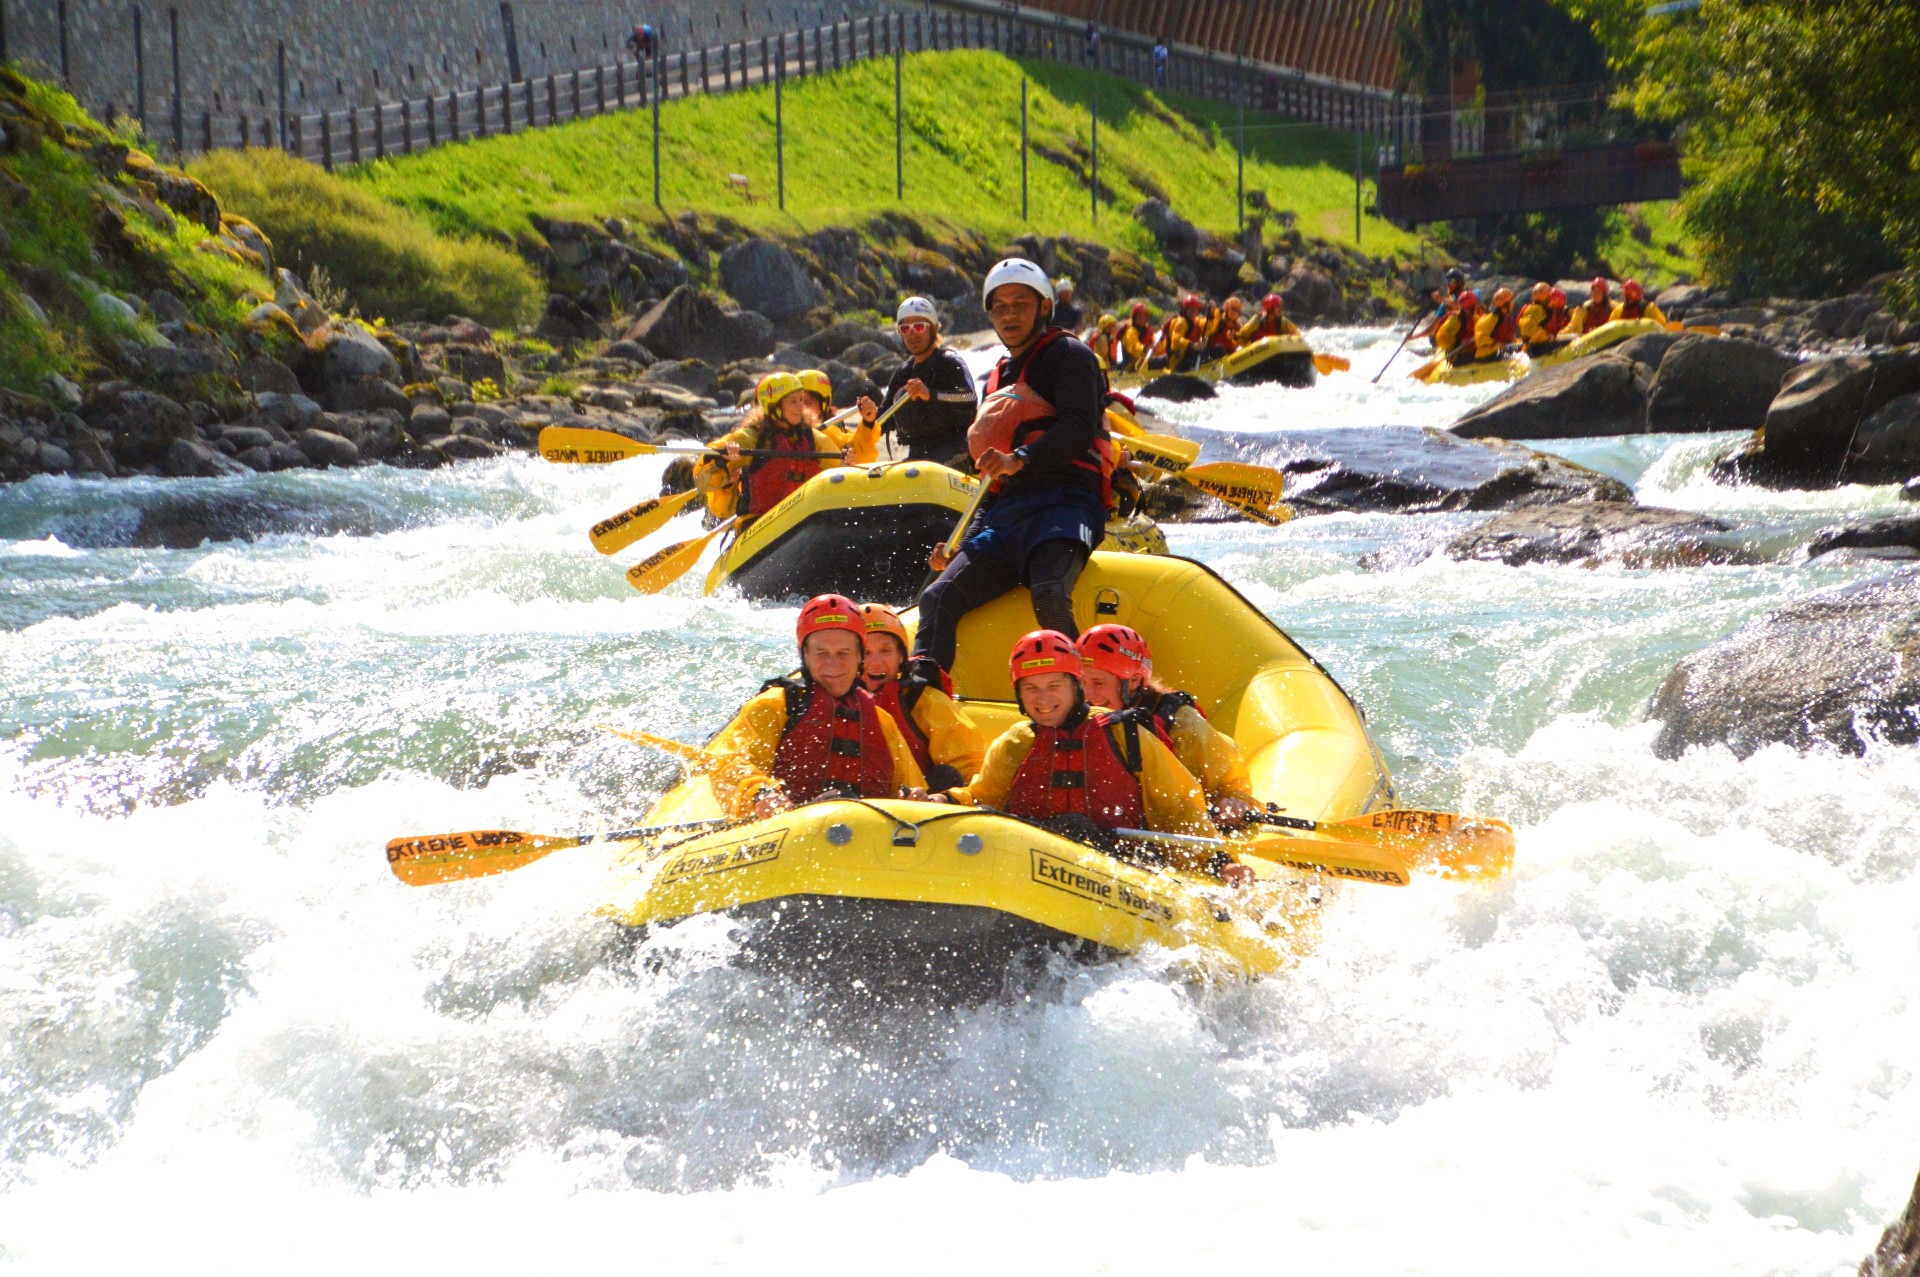 Quattro gommoni scendono il fiume Noce durante il rafting in Val di Sole.